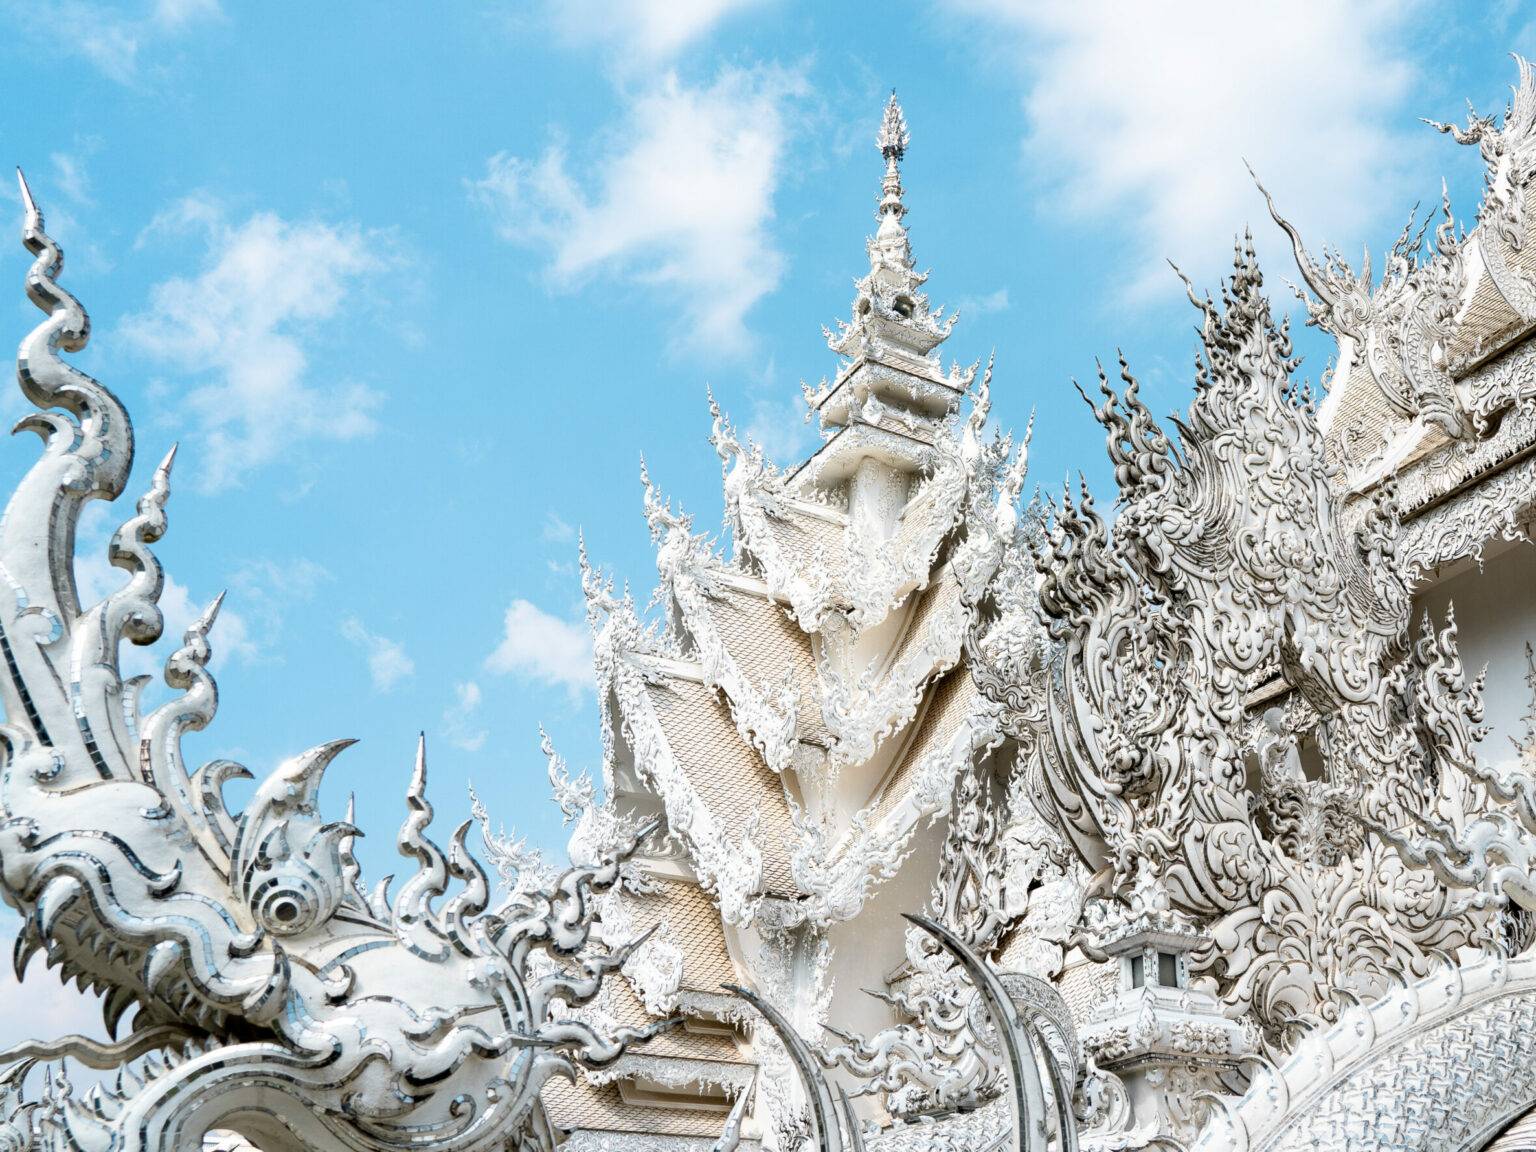 Drachenköpfe, spitze Türme und ausgefallene Spiegelstücke verzieren den weißten Tempel in Chiang Rai.